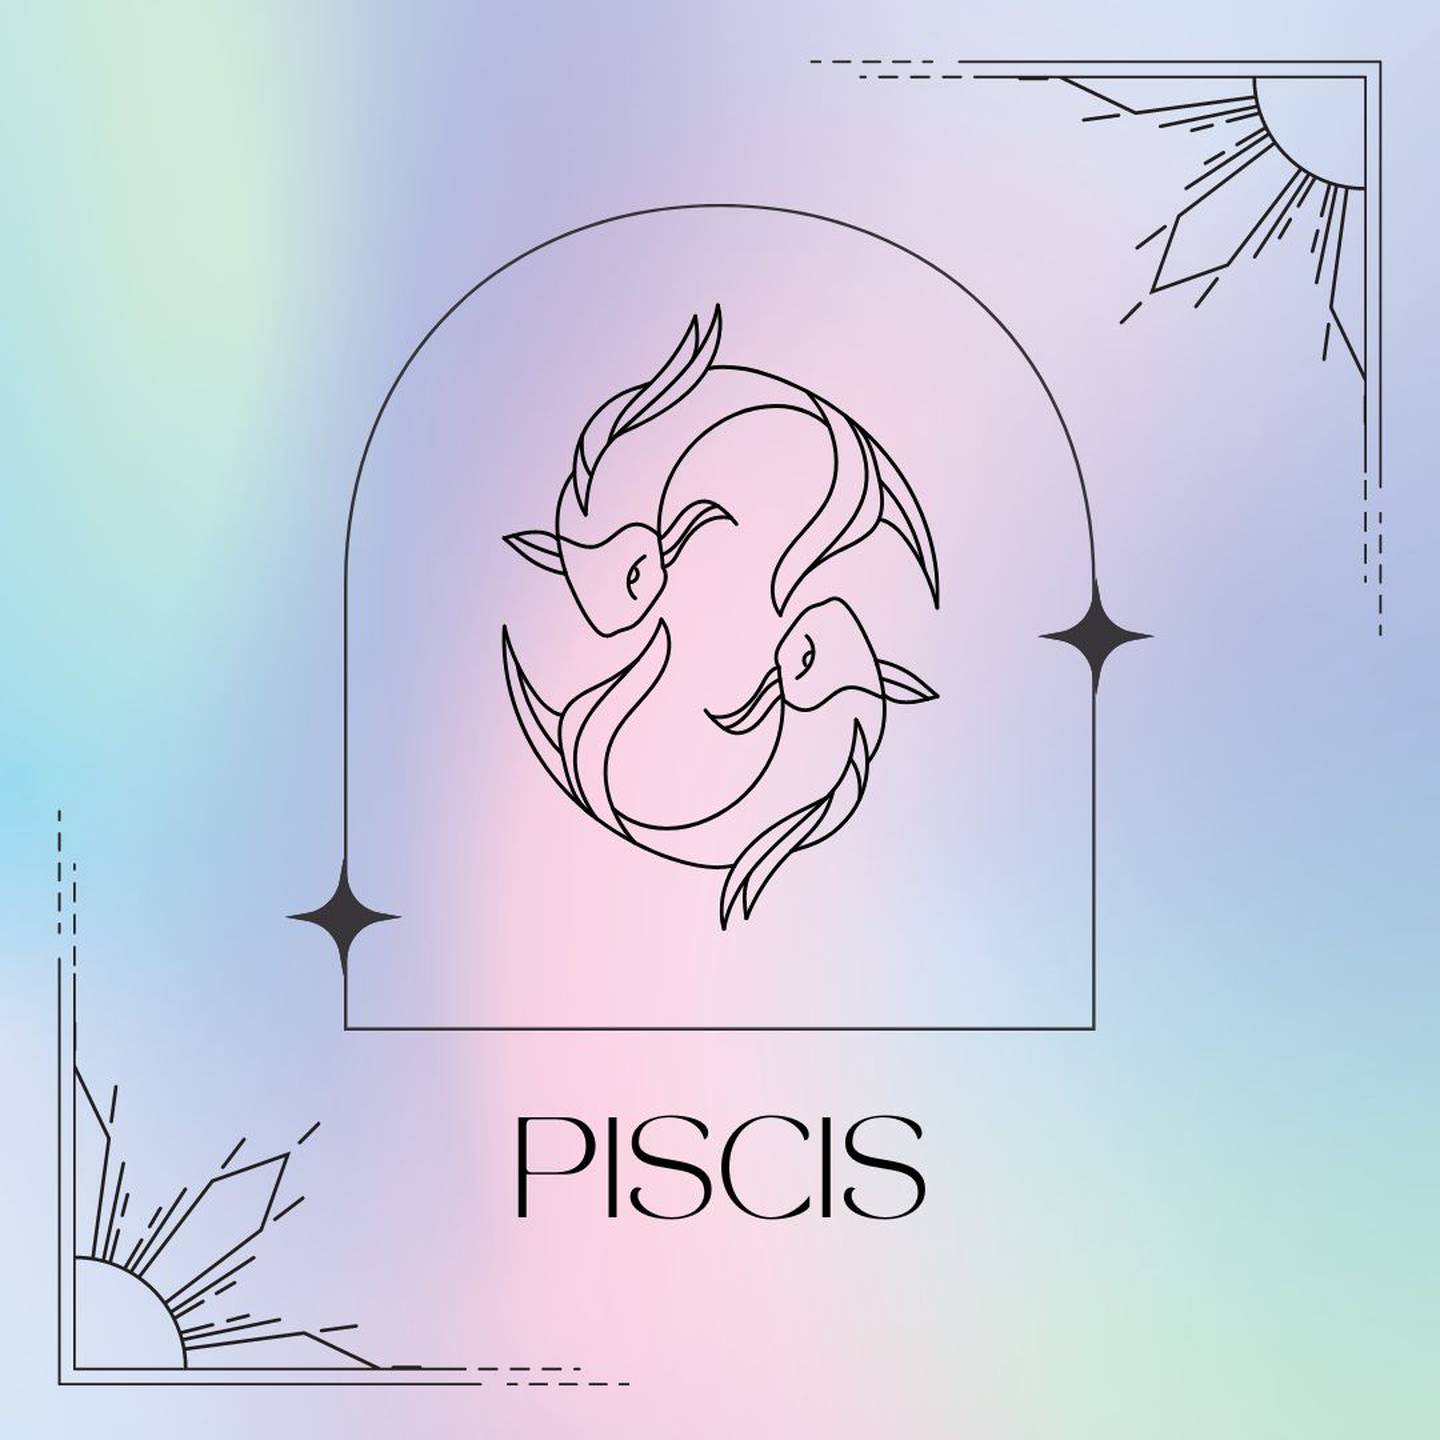 Dibujado en negro, el símbolo de Piscis aparece enmarcado sobre un fondo de suaves colores pastel.